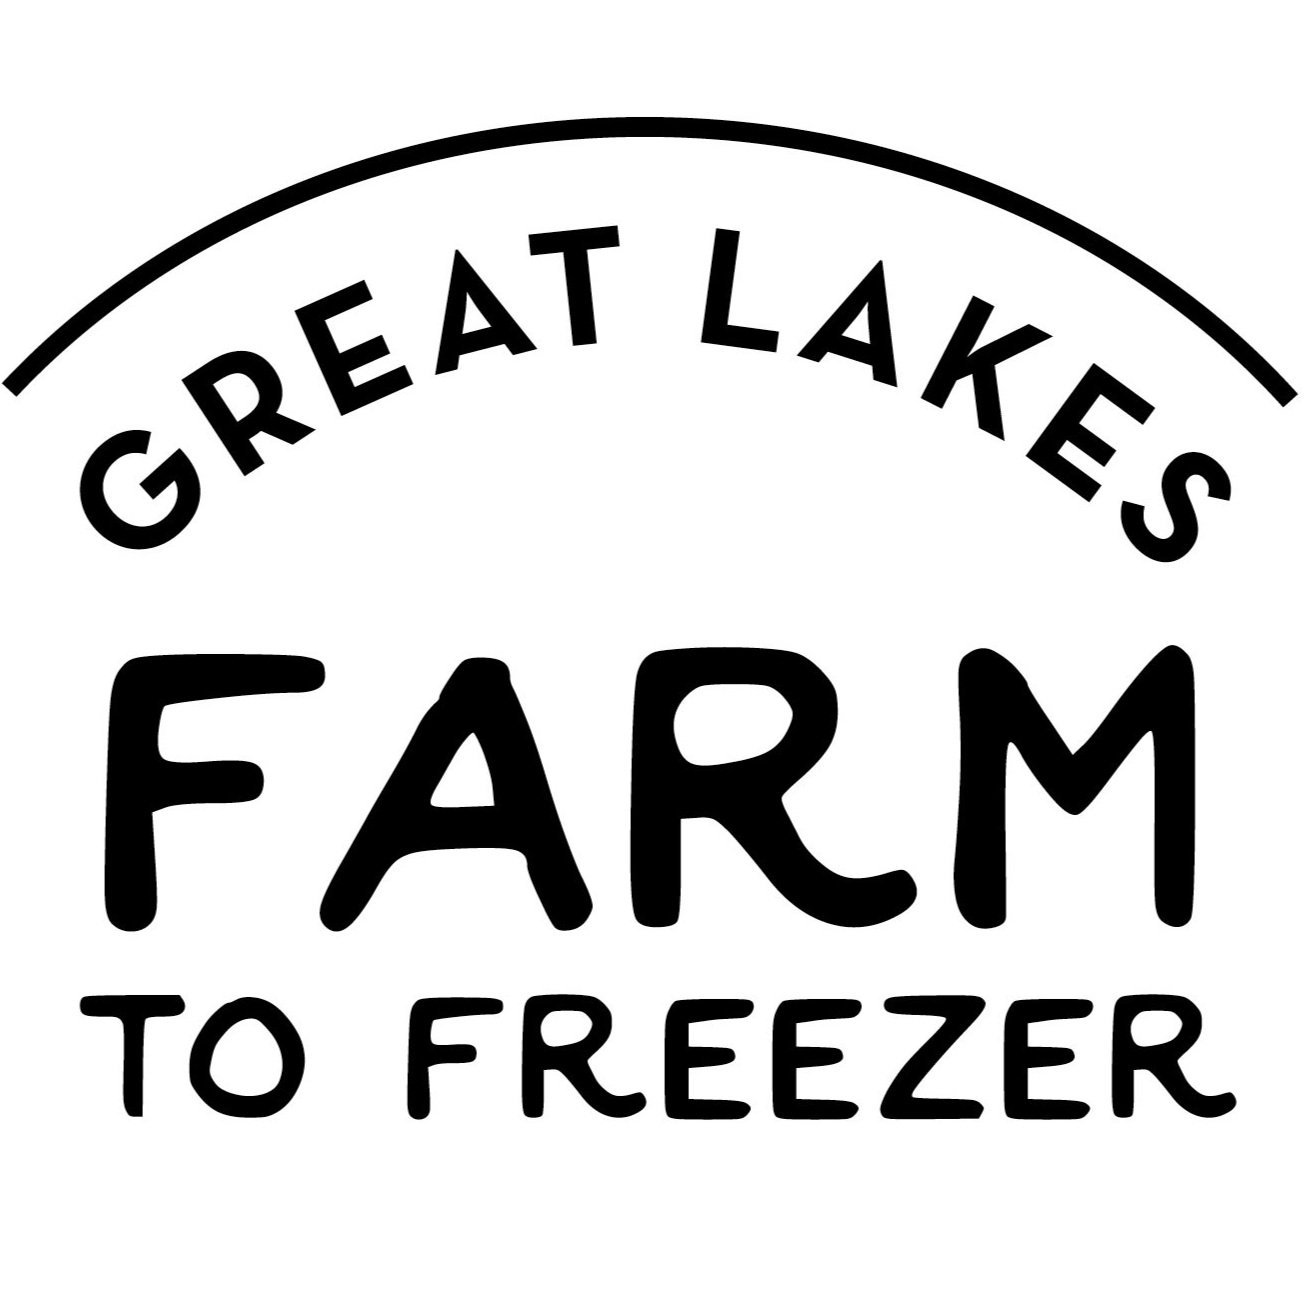 Great Lakes Farm to Freezer